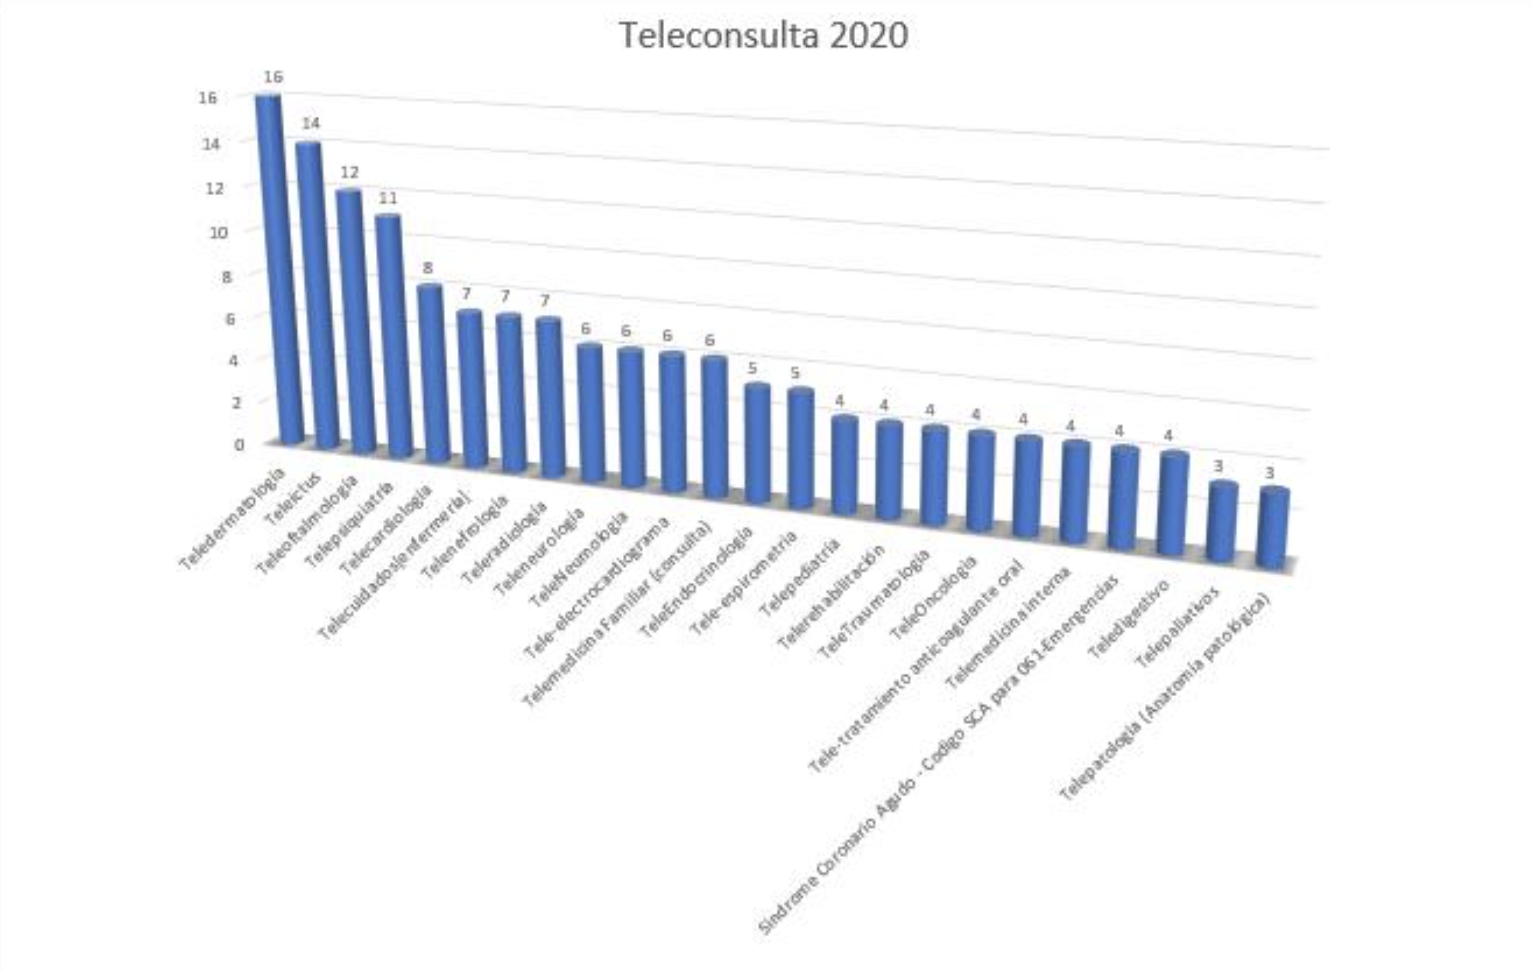 Grafico especialidades telemedicina SEIS2020